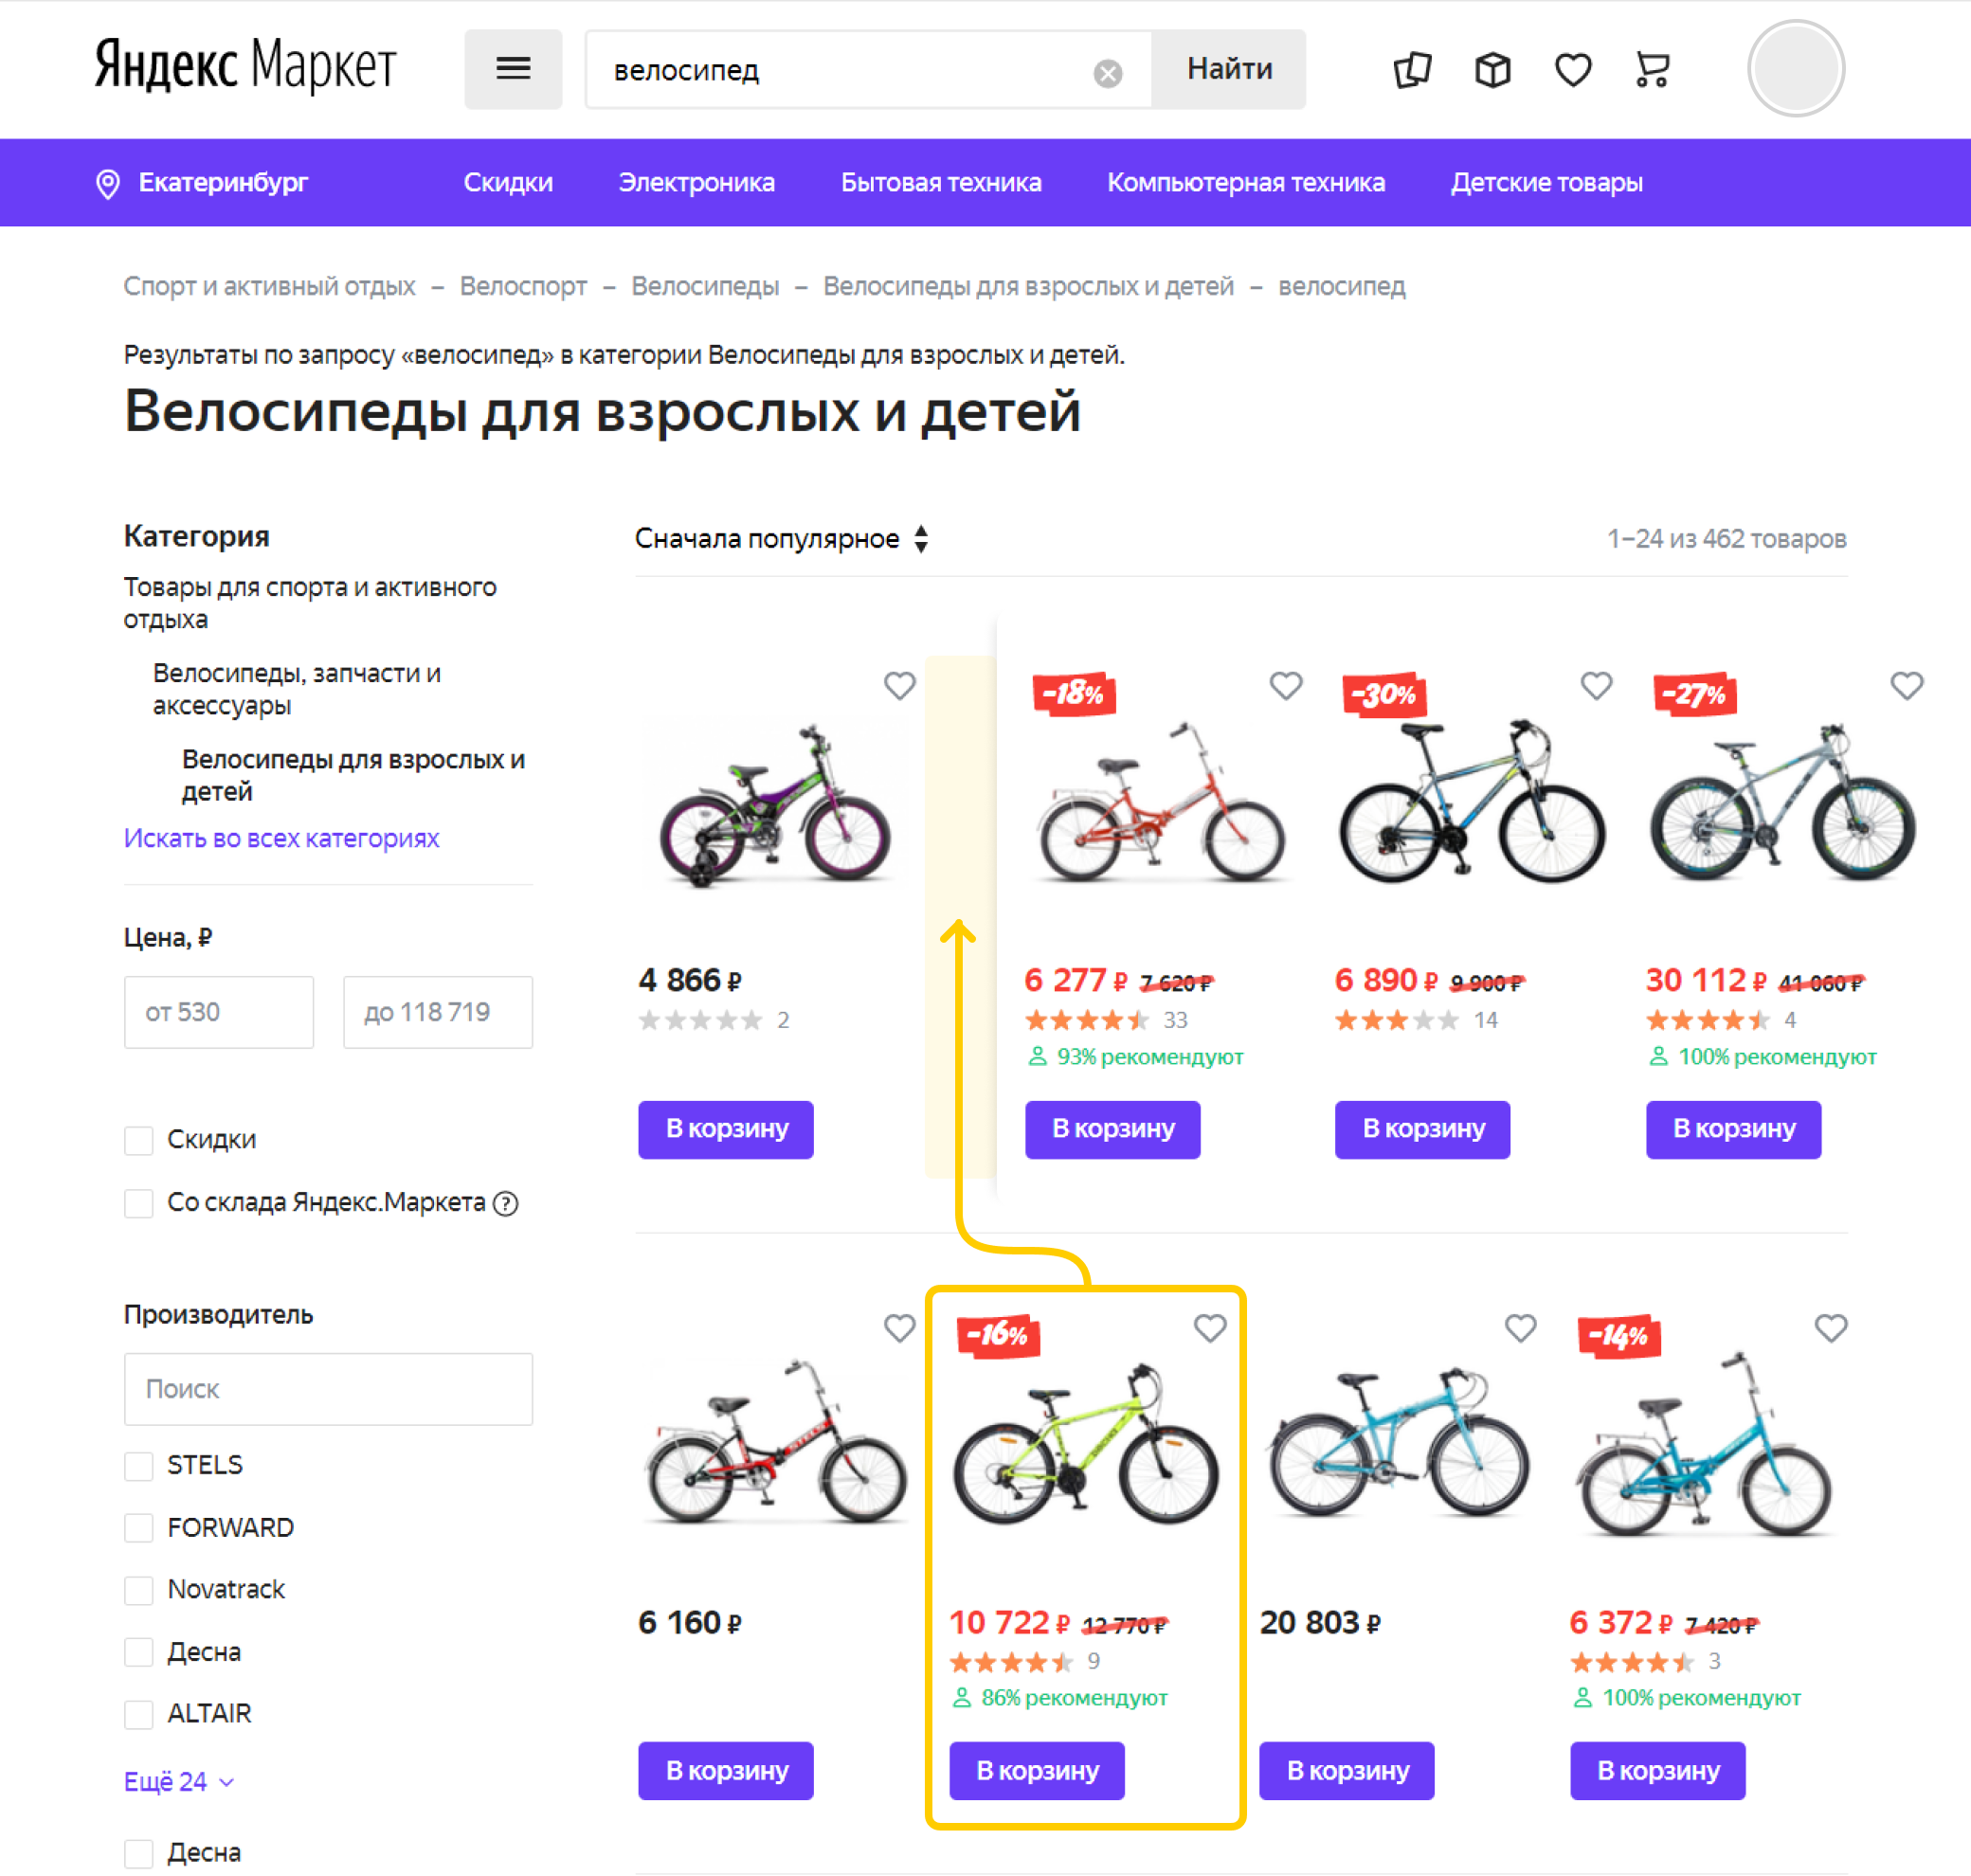 «Яндекс.Маркет» анонсировал рекламные стратегии для продвижения товаров